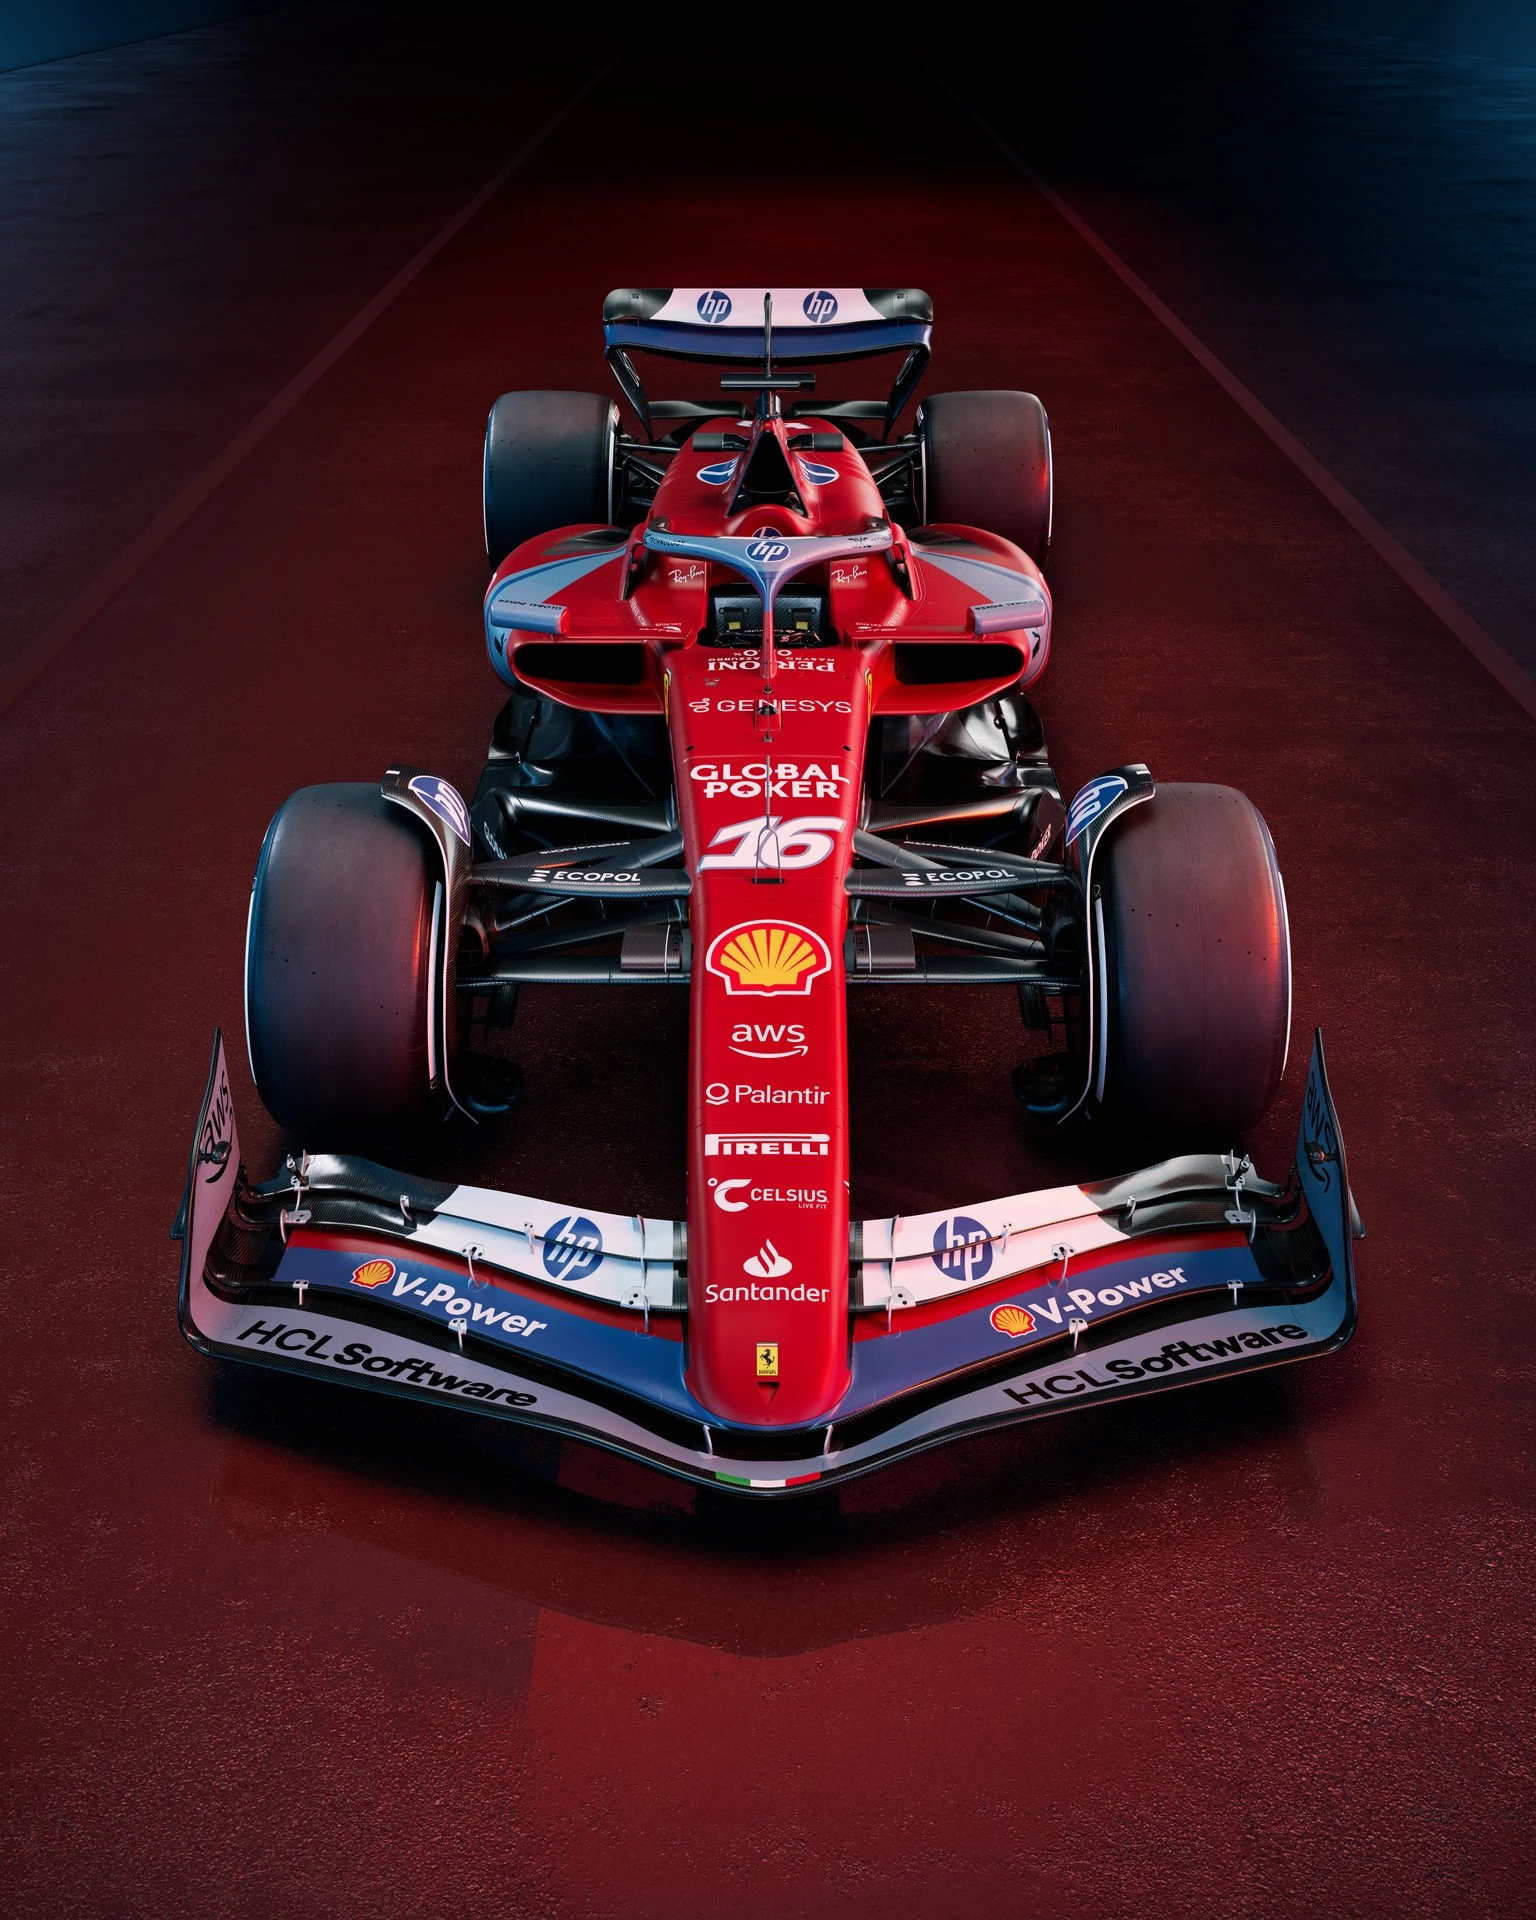 Ferrari'nin Miami GP'sinde kullanacağı özel renk düzeni gallery image 0